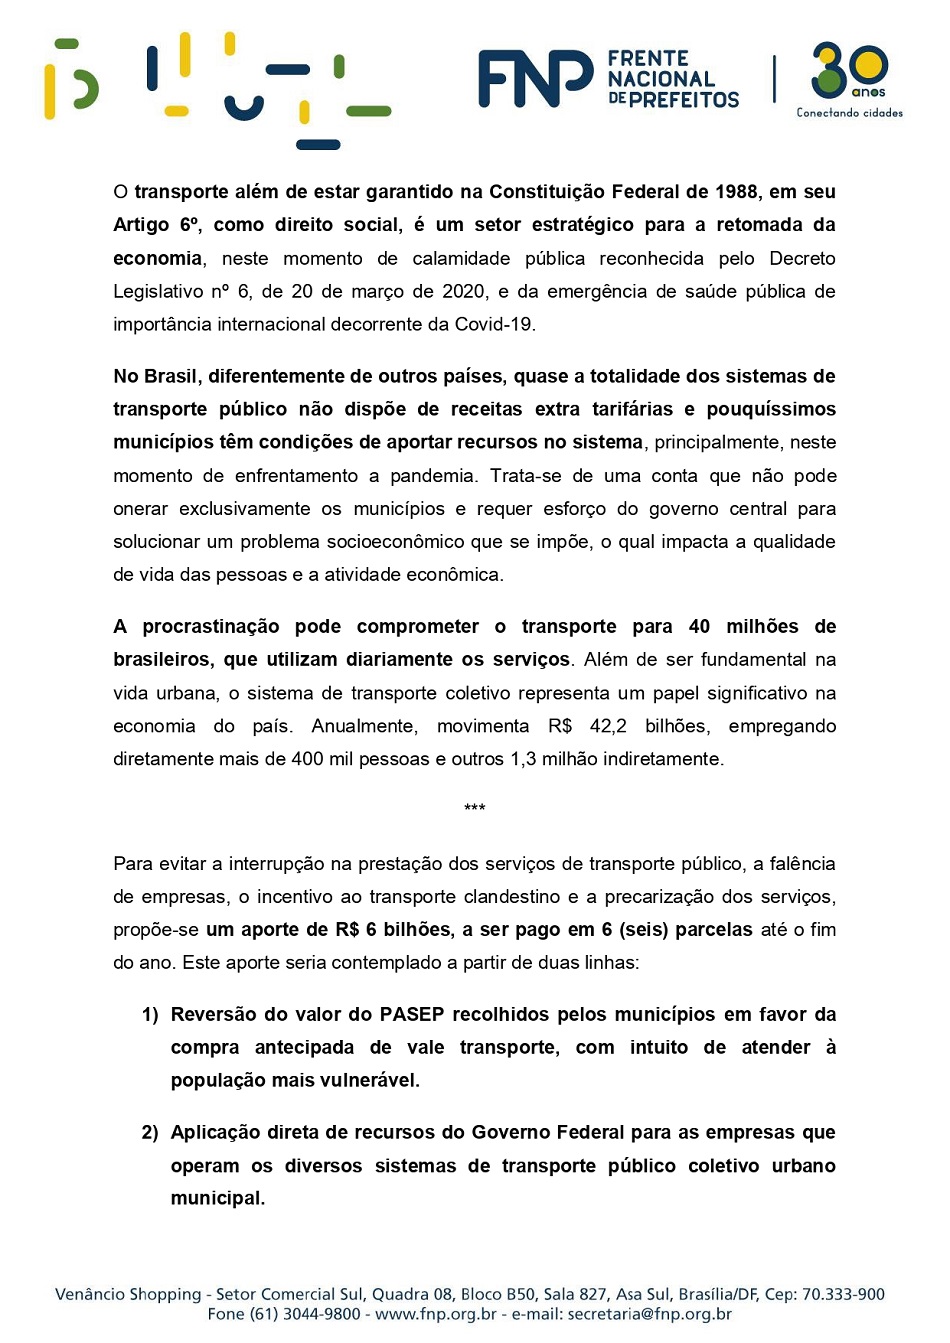 SEGURANÇA SANITÁRIA NO TRANSPORTE PÚBLICO COLETIVO URBANO - 23.06.20_page-0002